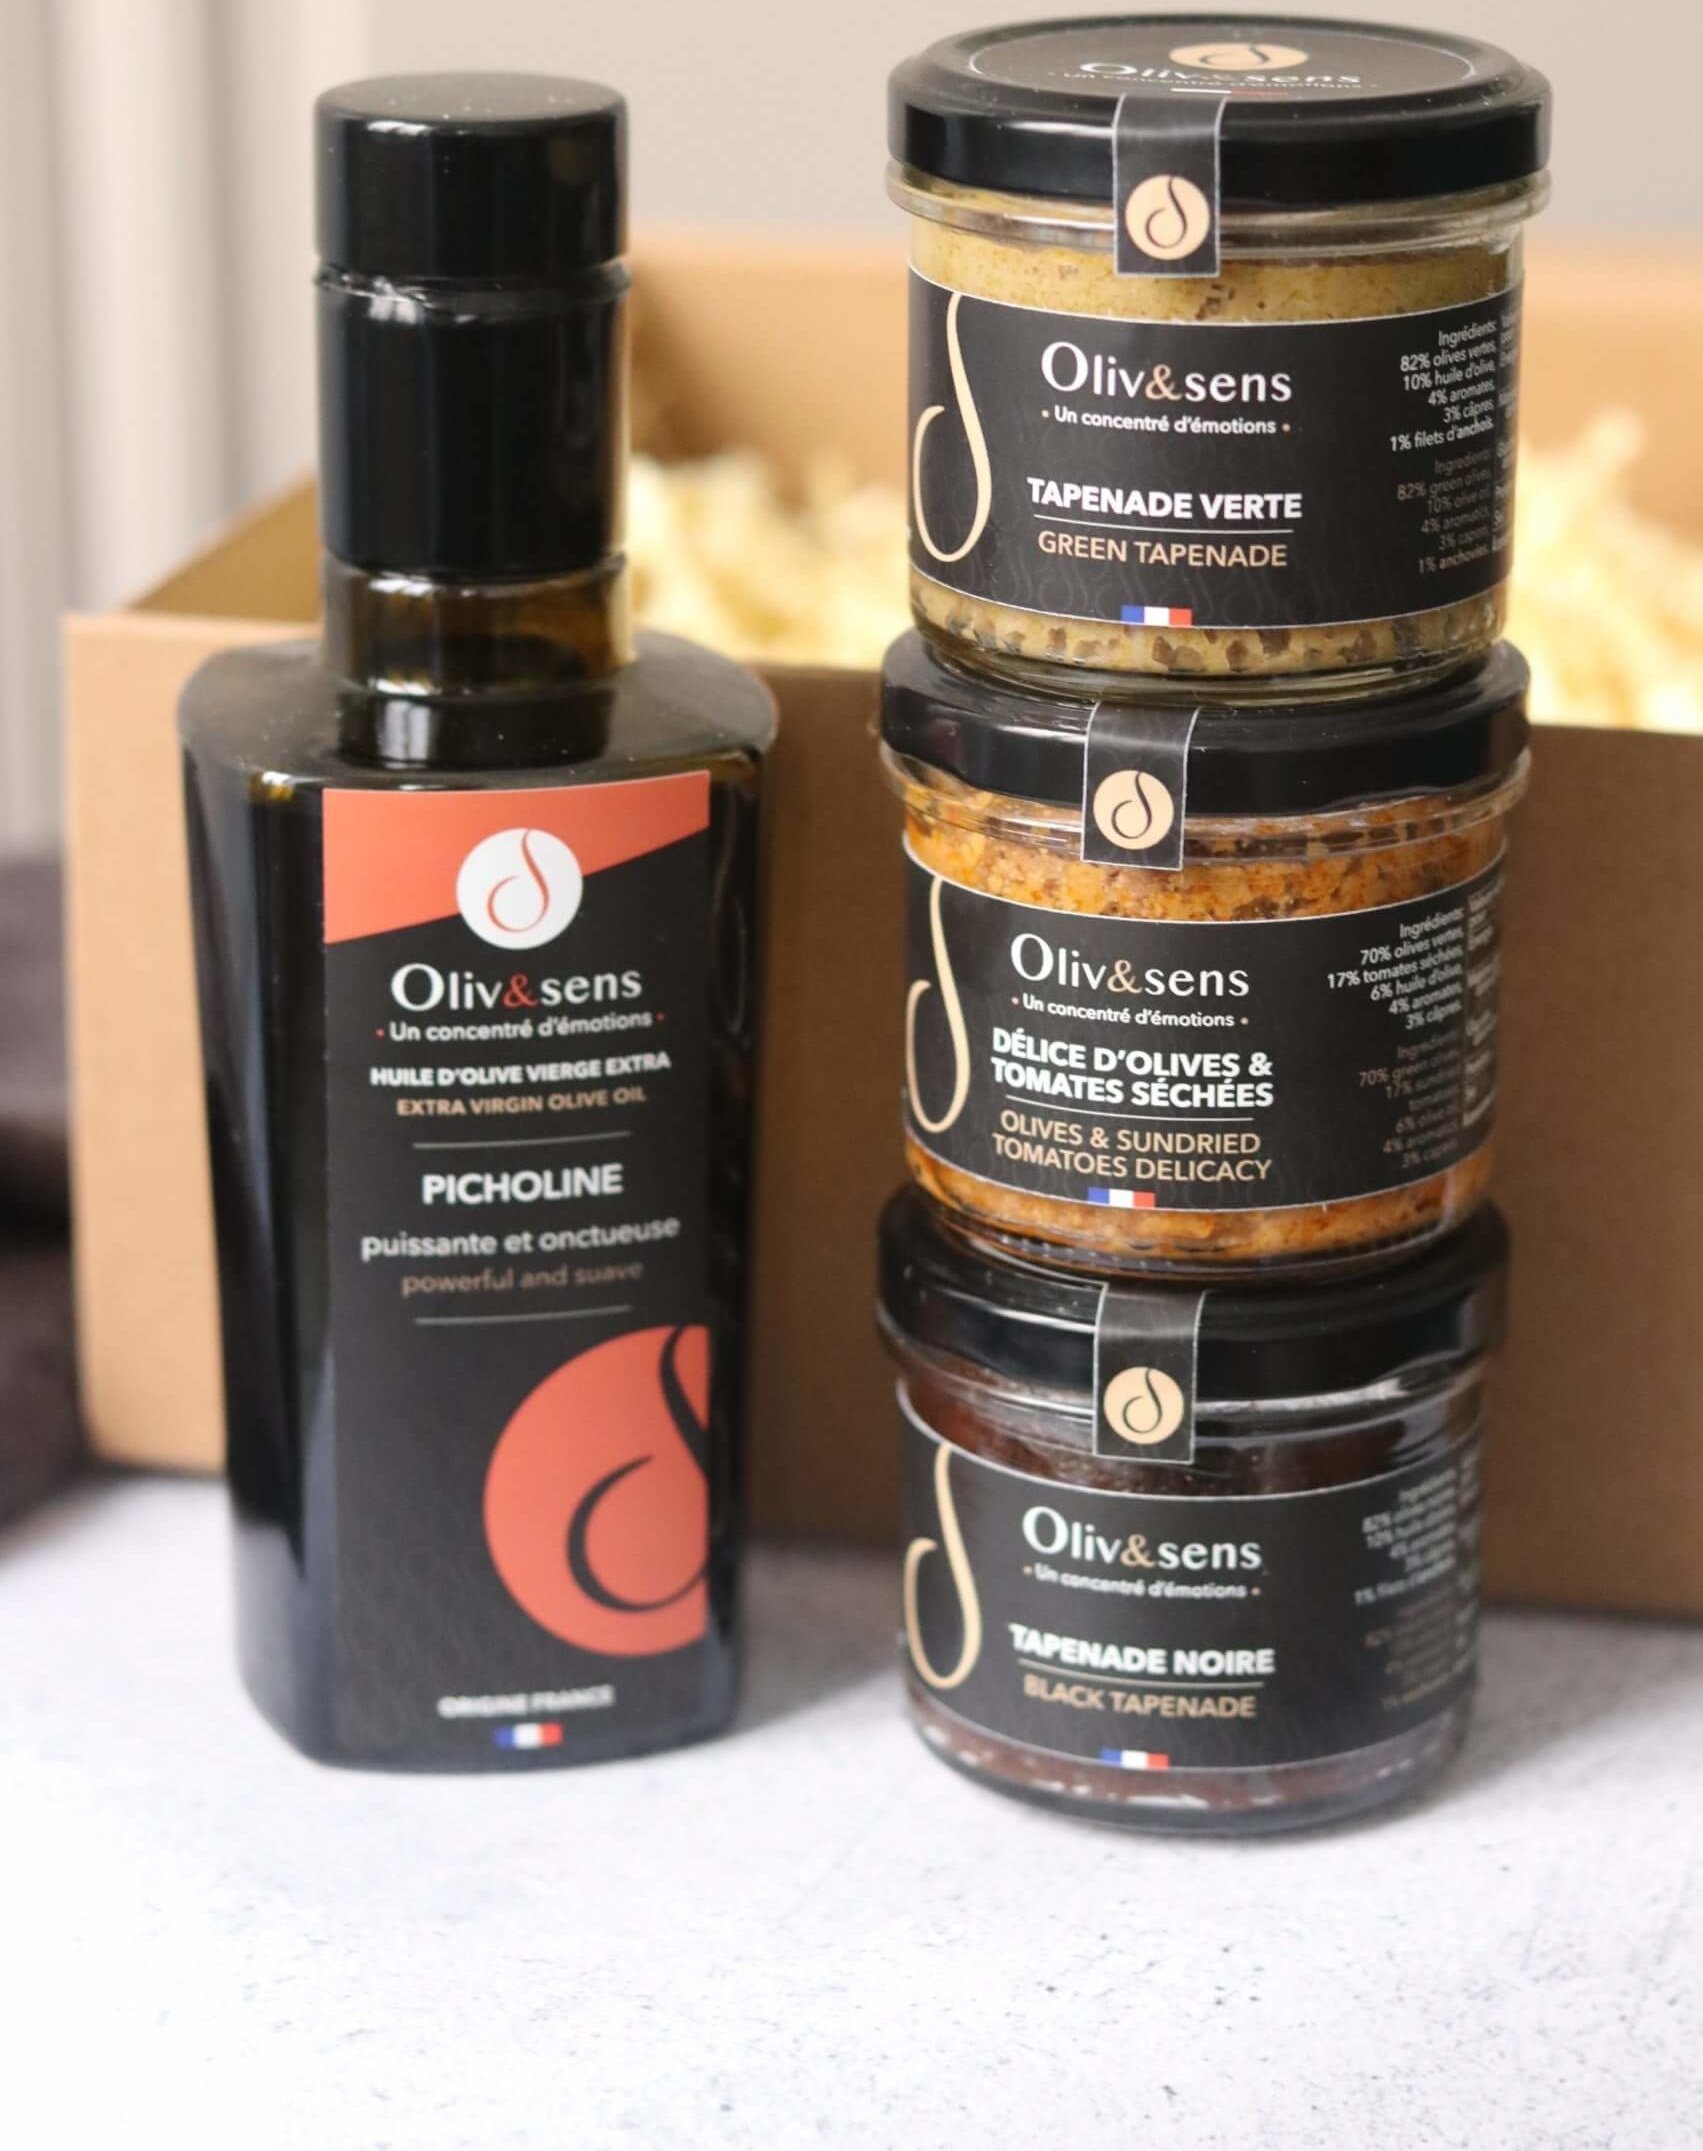 coffret cadeau gourmet Olive et sens Olive & sens Oliv&sens conserverie artisanale made in france huile d'olive vierge extra